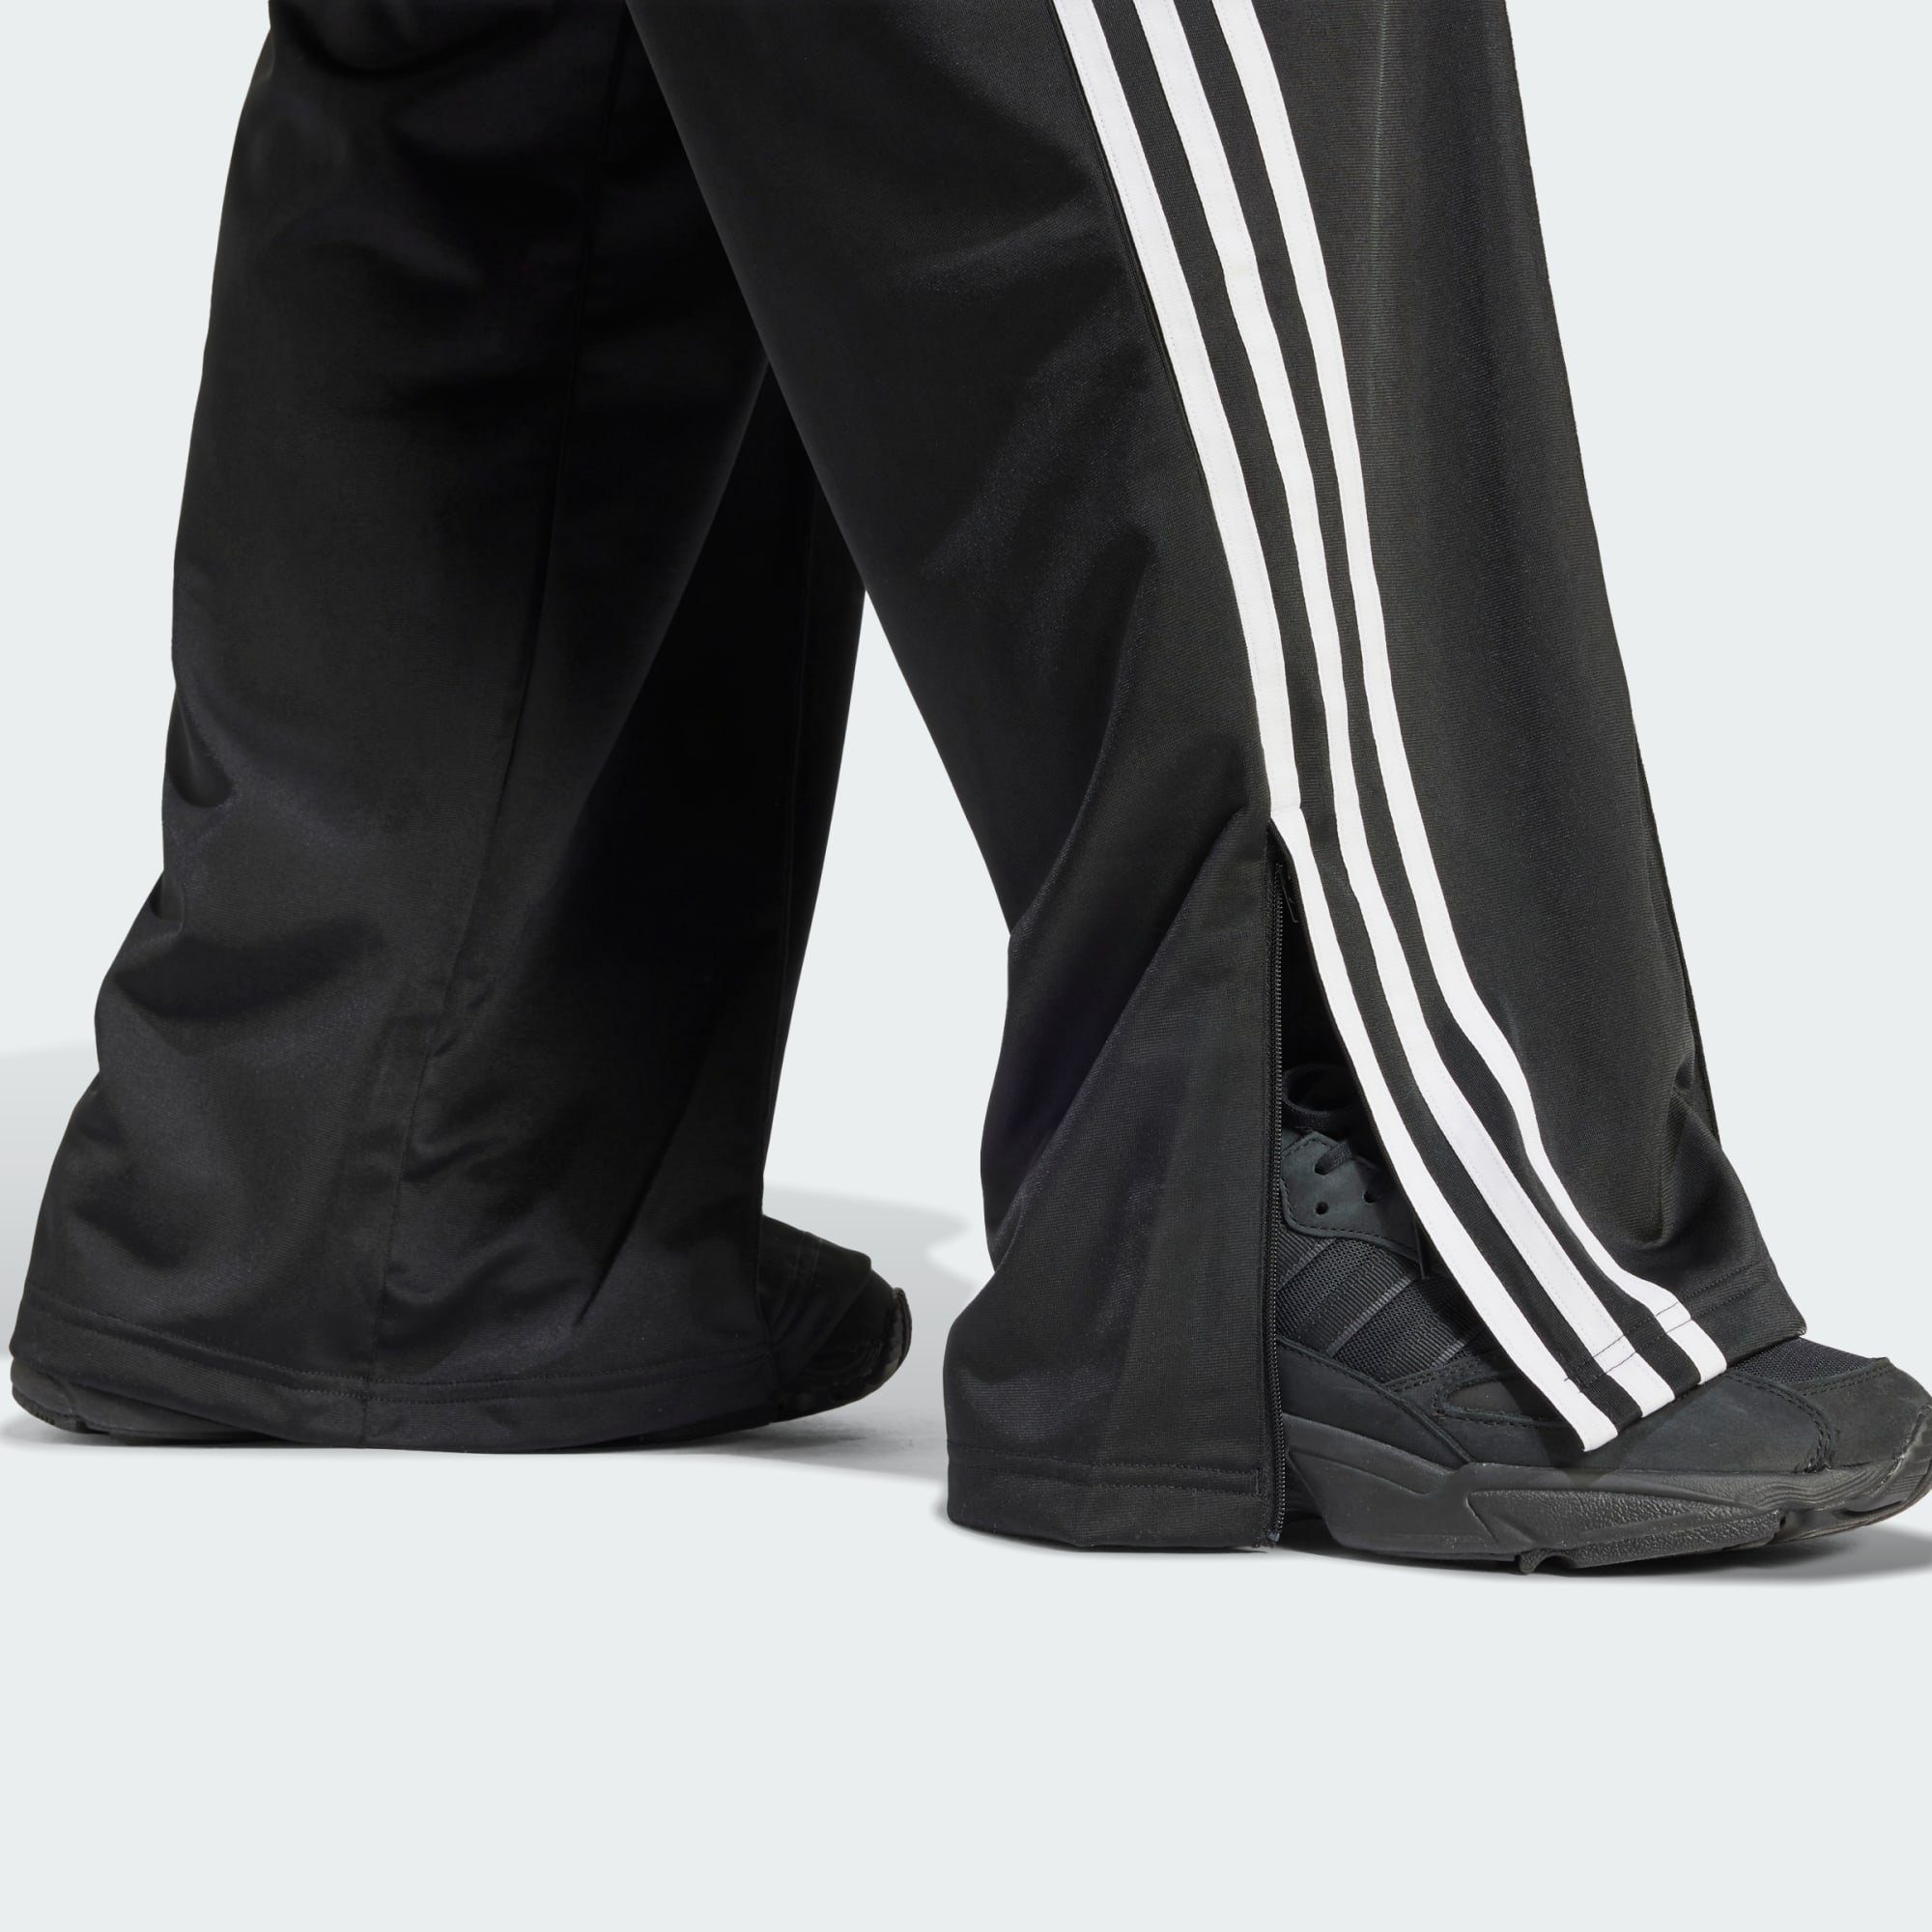 Originals TRAININGSHOSE Black FIREBIRD Jogginghose LOOSE adidas